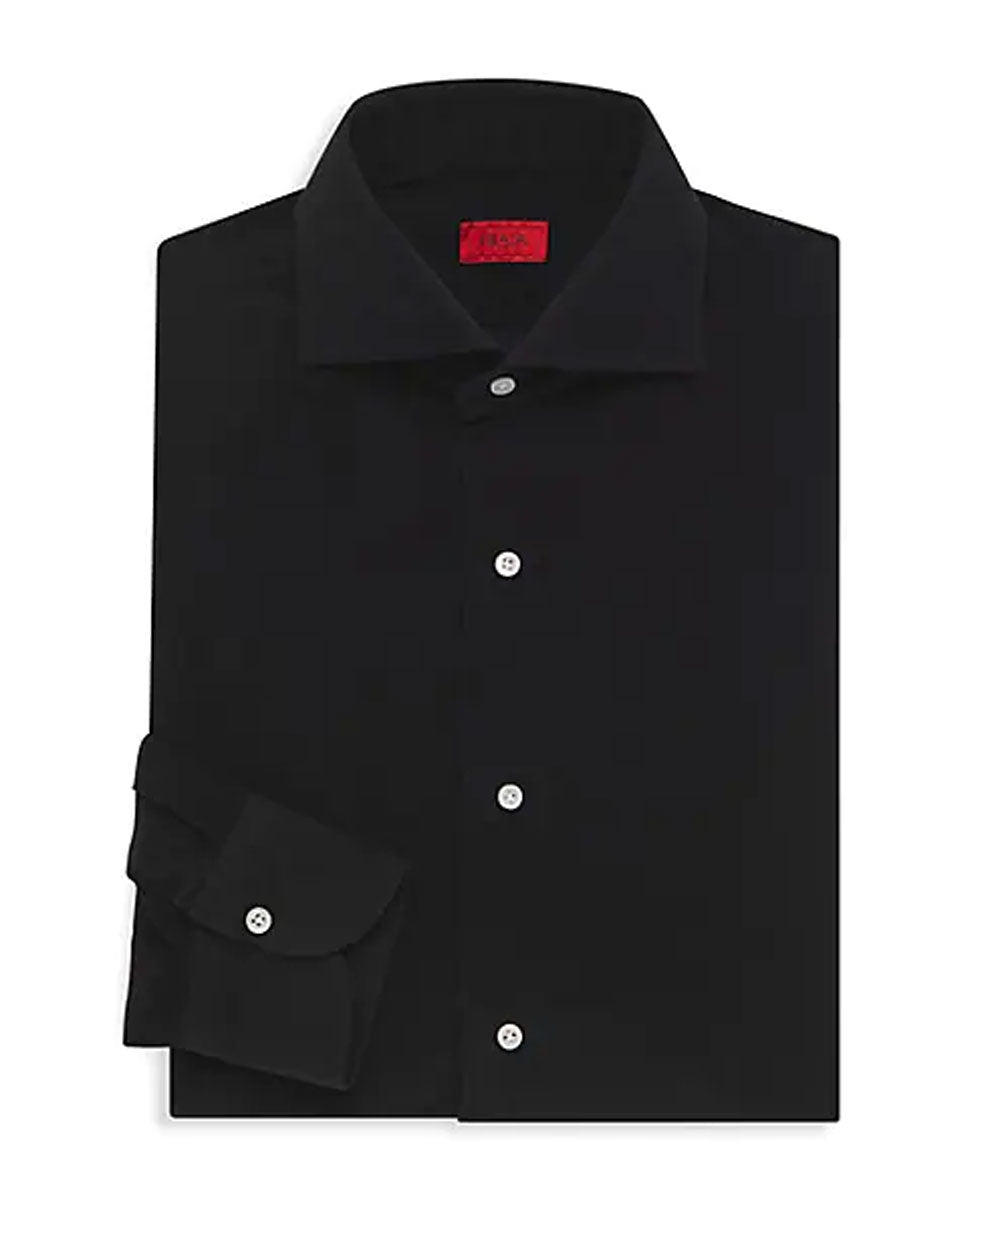 Black Corduroy Button-Down Shirt